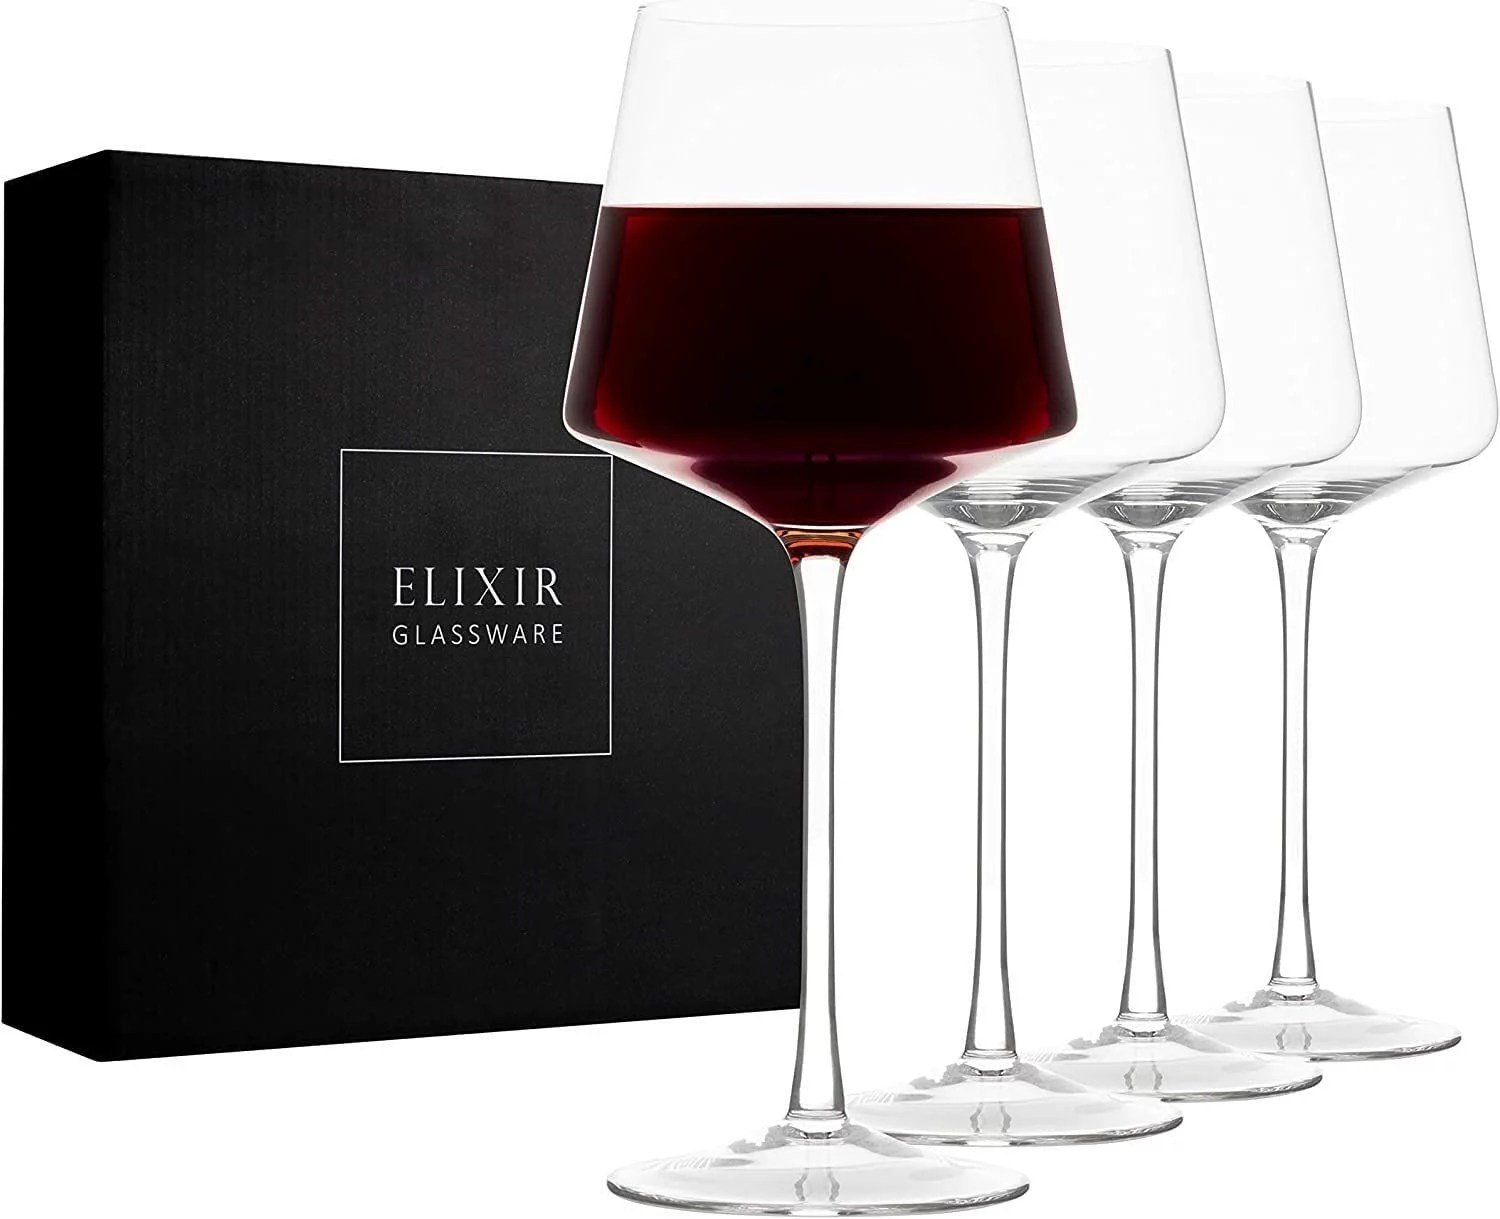 elixir glassware